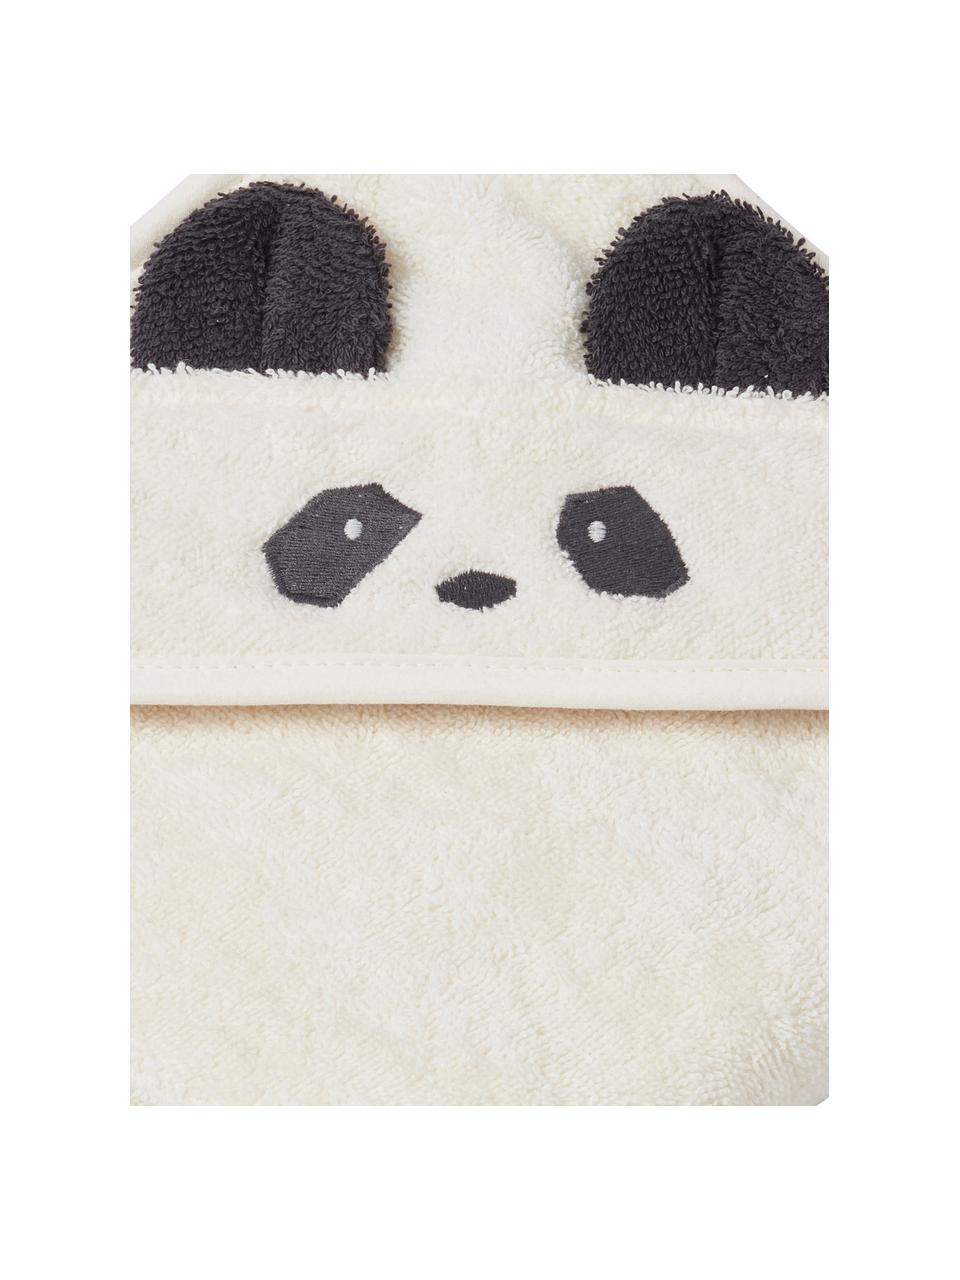 Dětský ručník Albert Panda, 100% bio bavlna (bavlněné froté), s certifikací GOTS, Bílá, černá, Š 70 cm, D 70 cm